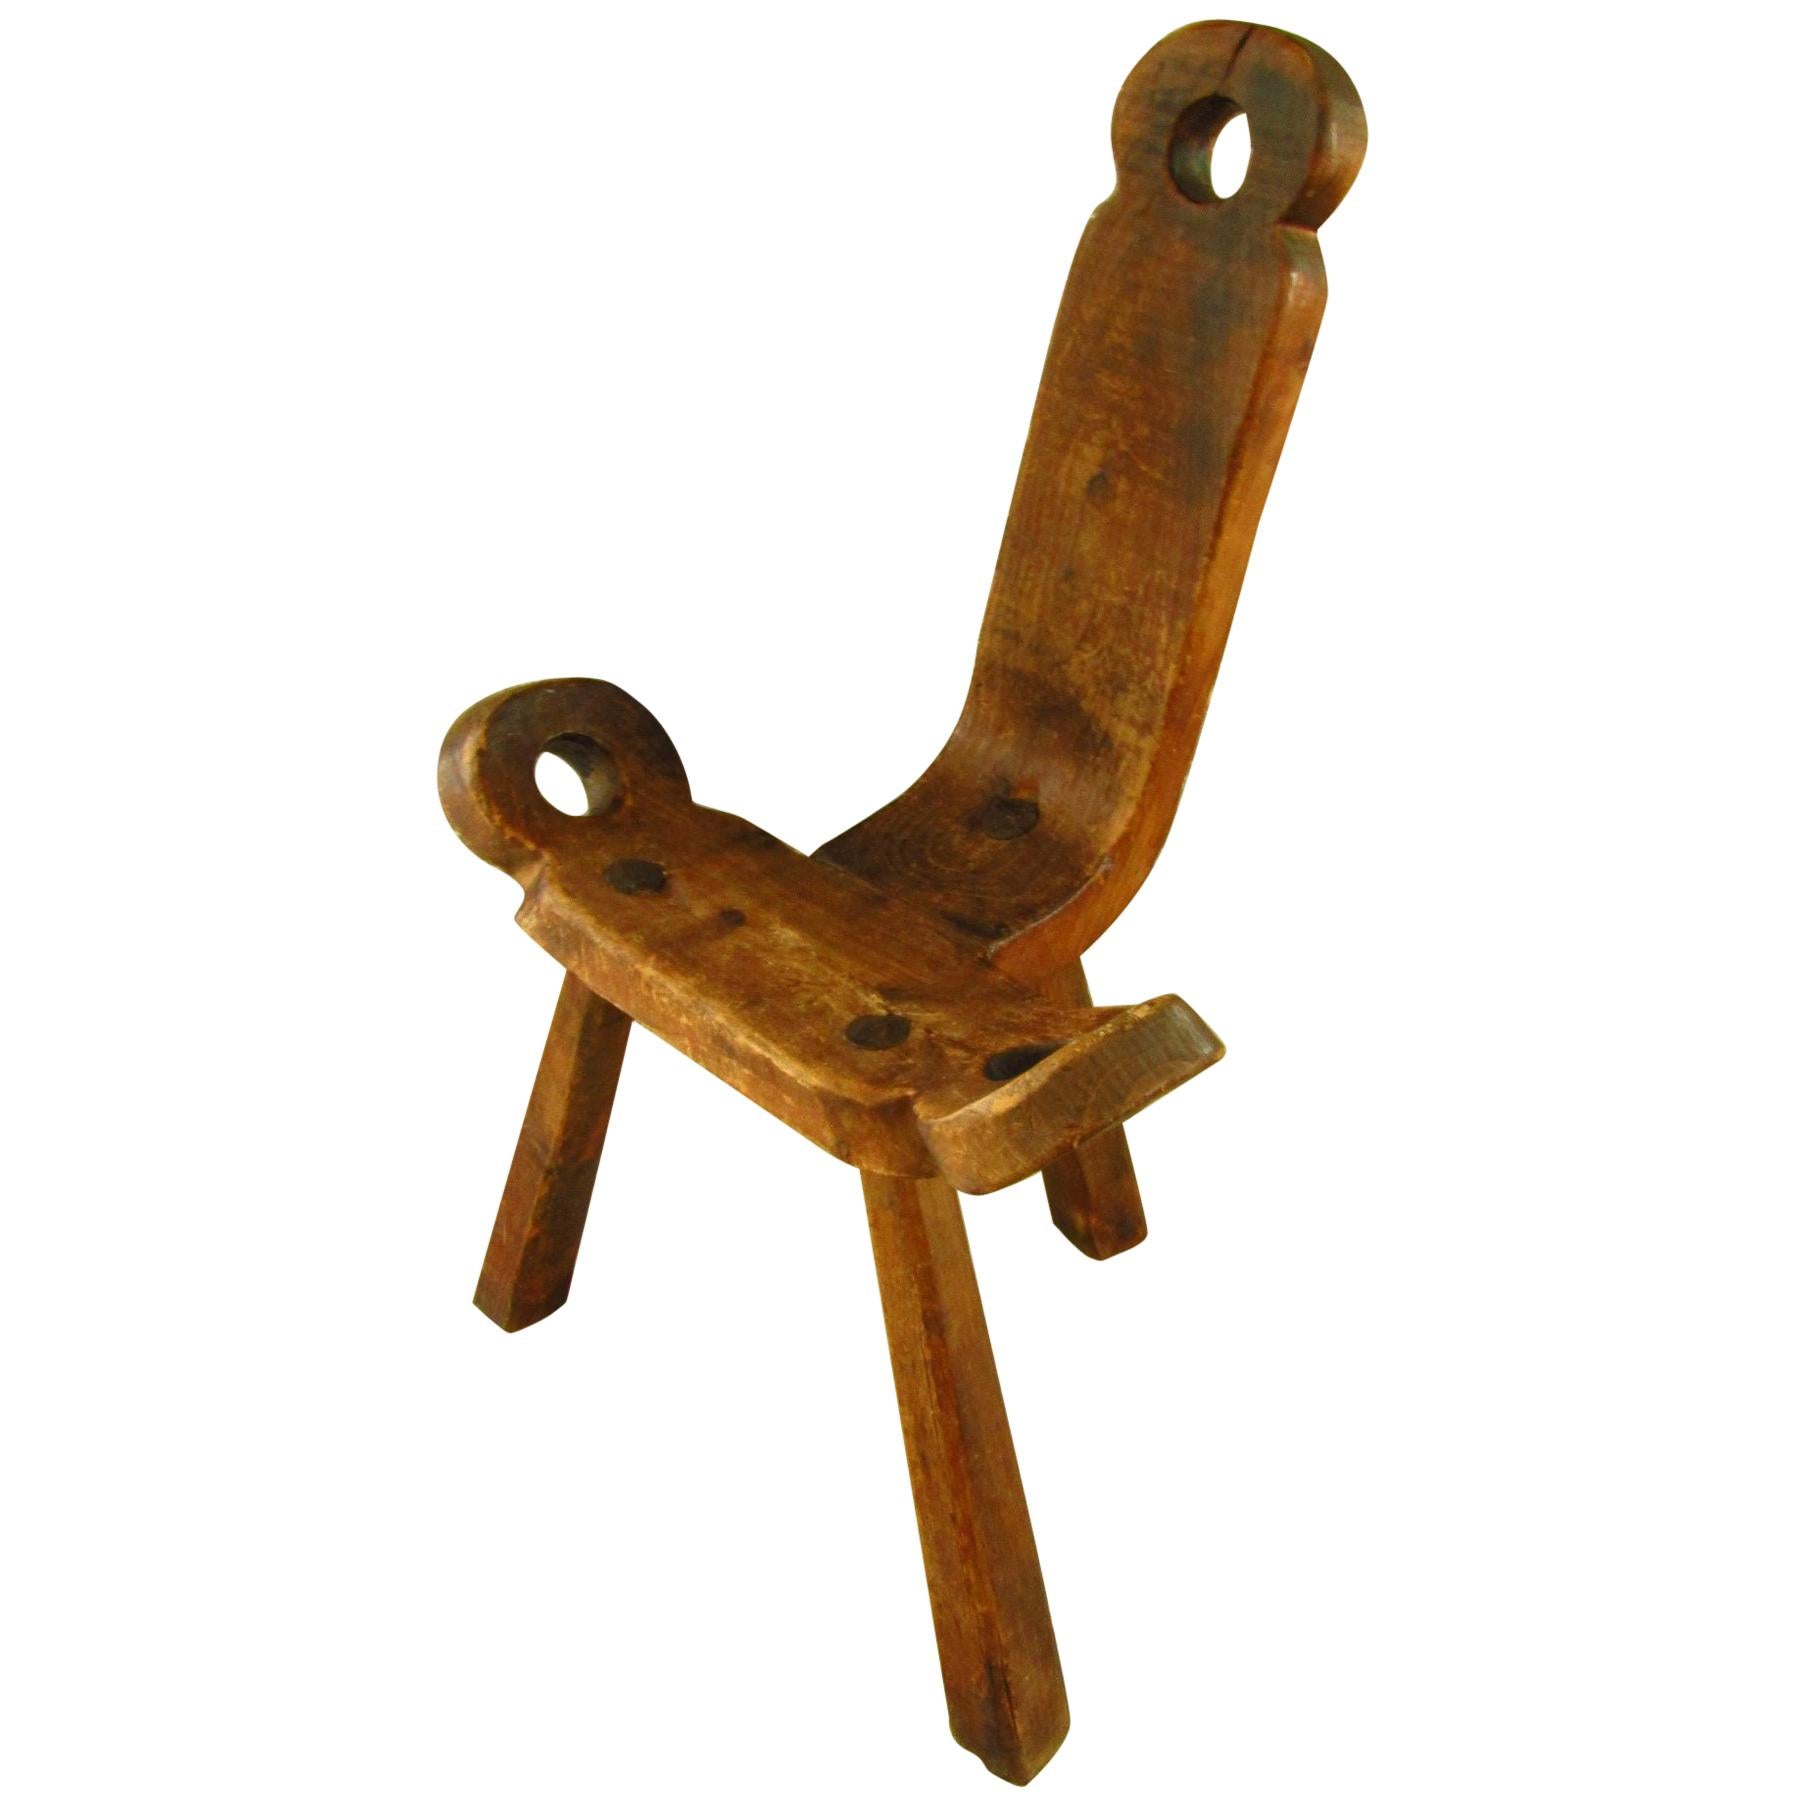 Primitive Rustic Chair Stool, Austria 18th Century